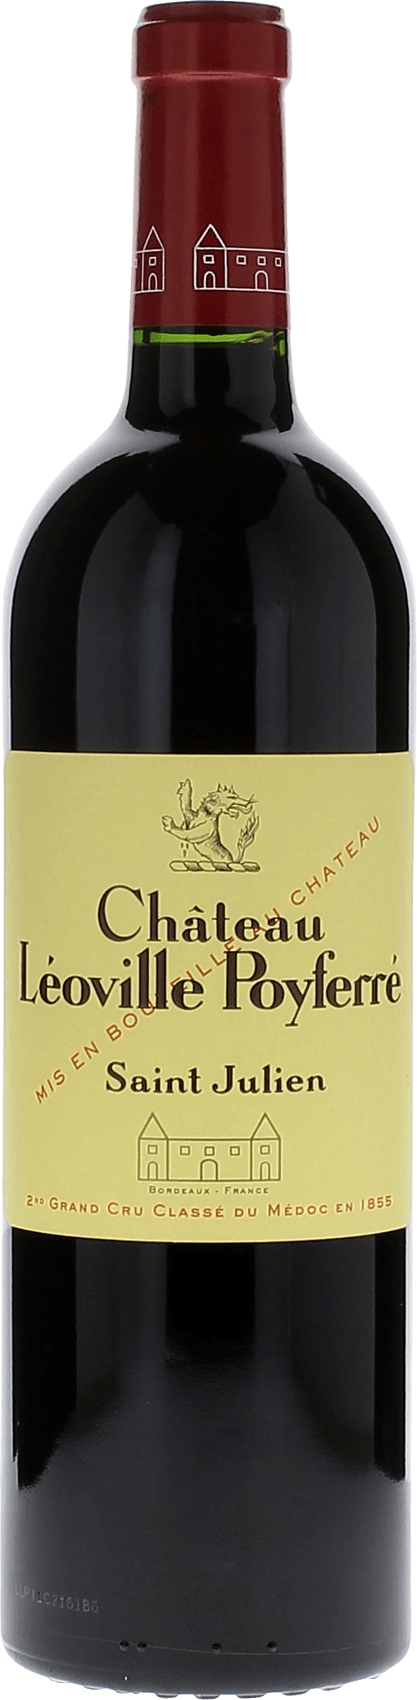 Leoville poyferre 1997 2me Grand cru class Saint-Julien, Bordeaux rouge